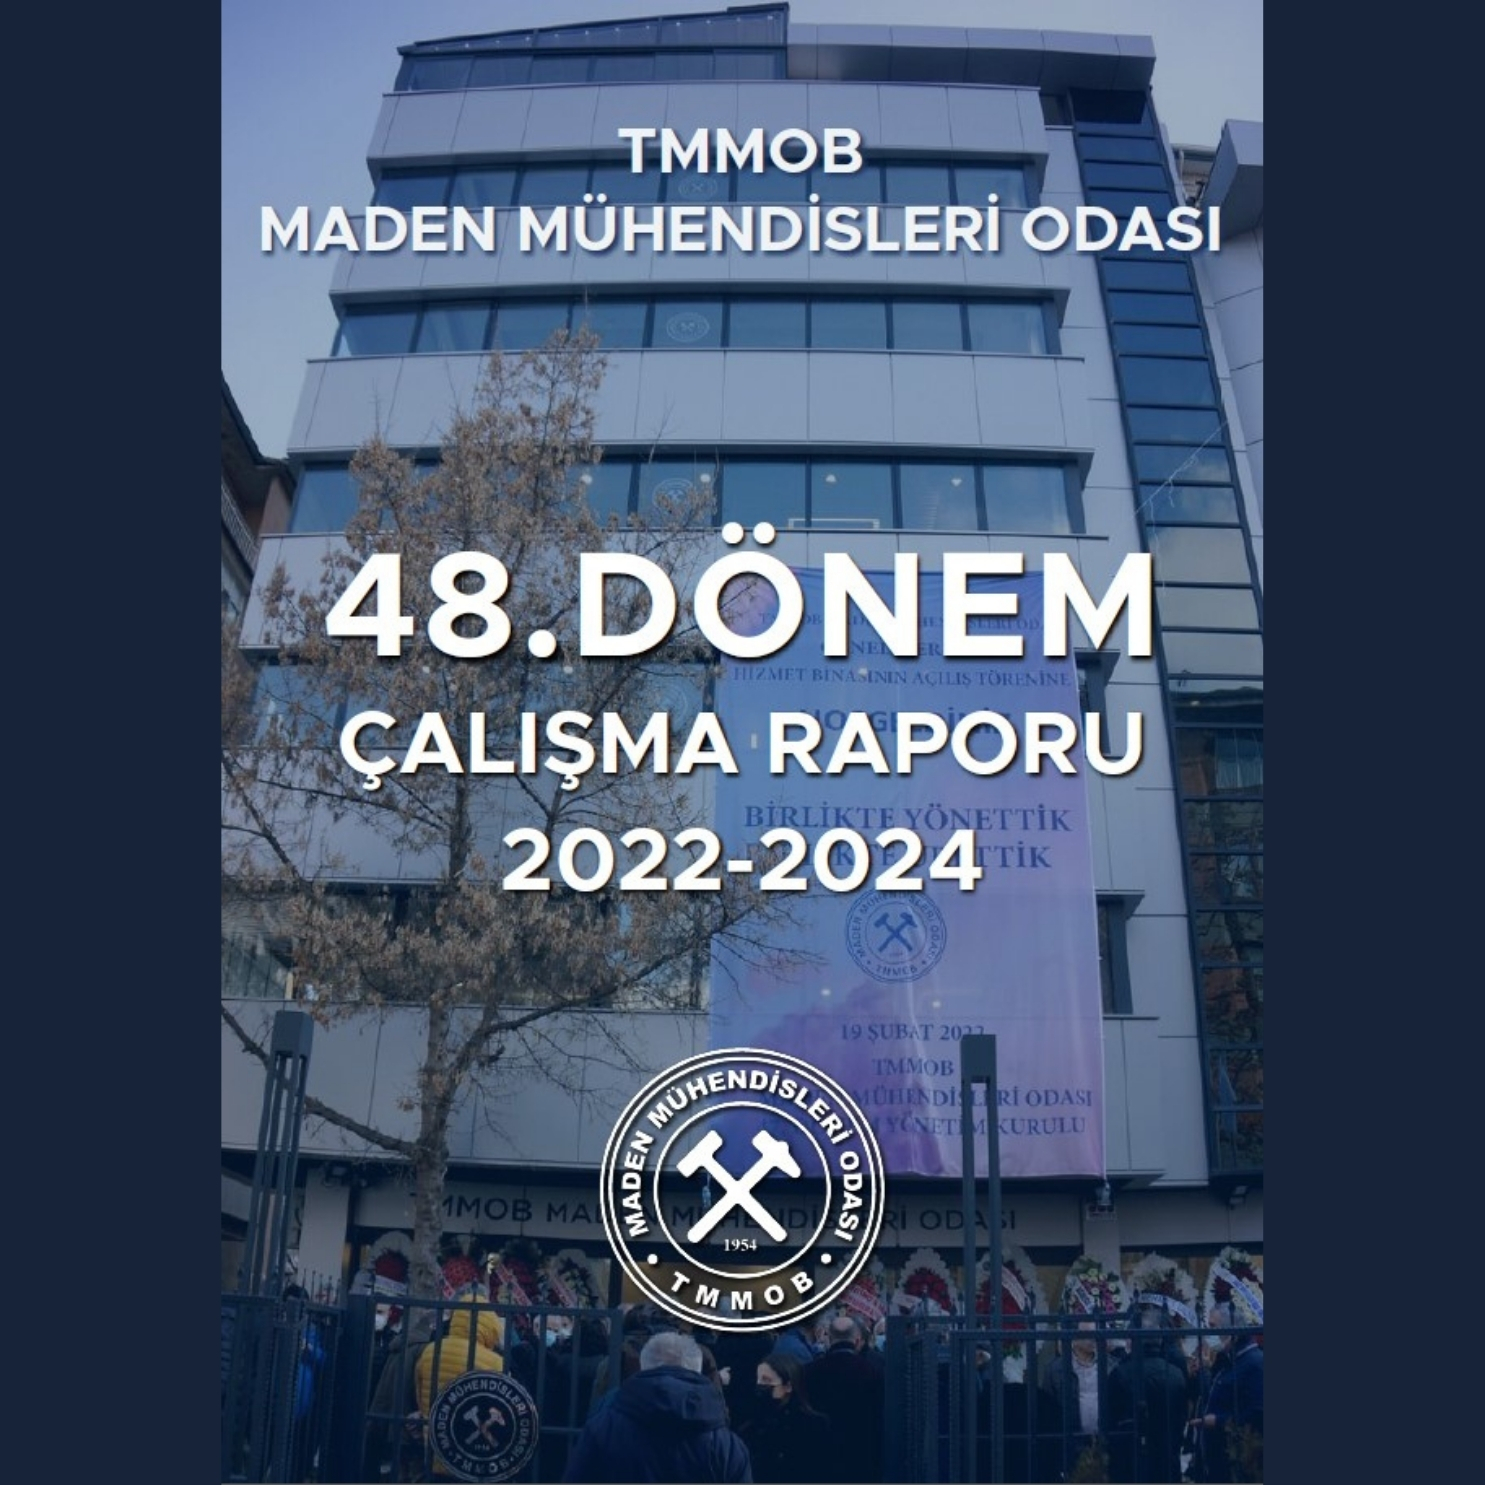 TMMOB MADEN MÜHENDİSLERİ ODASI 48. DÖNEM ÇALIŞMA RAPORU 2022-2024 YAYIMLANDI.